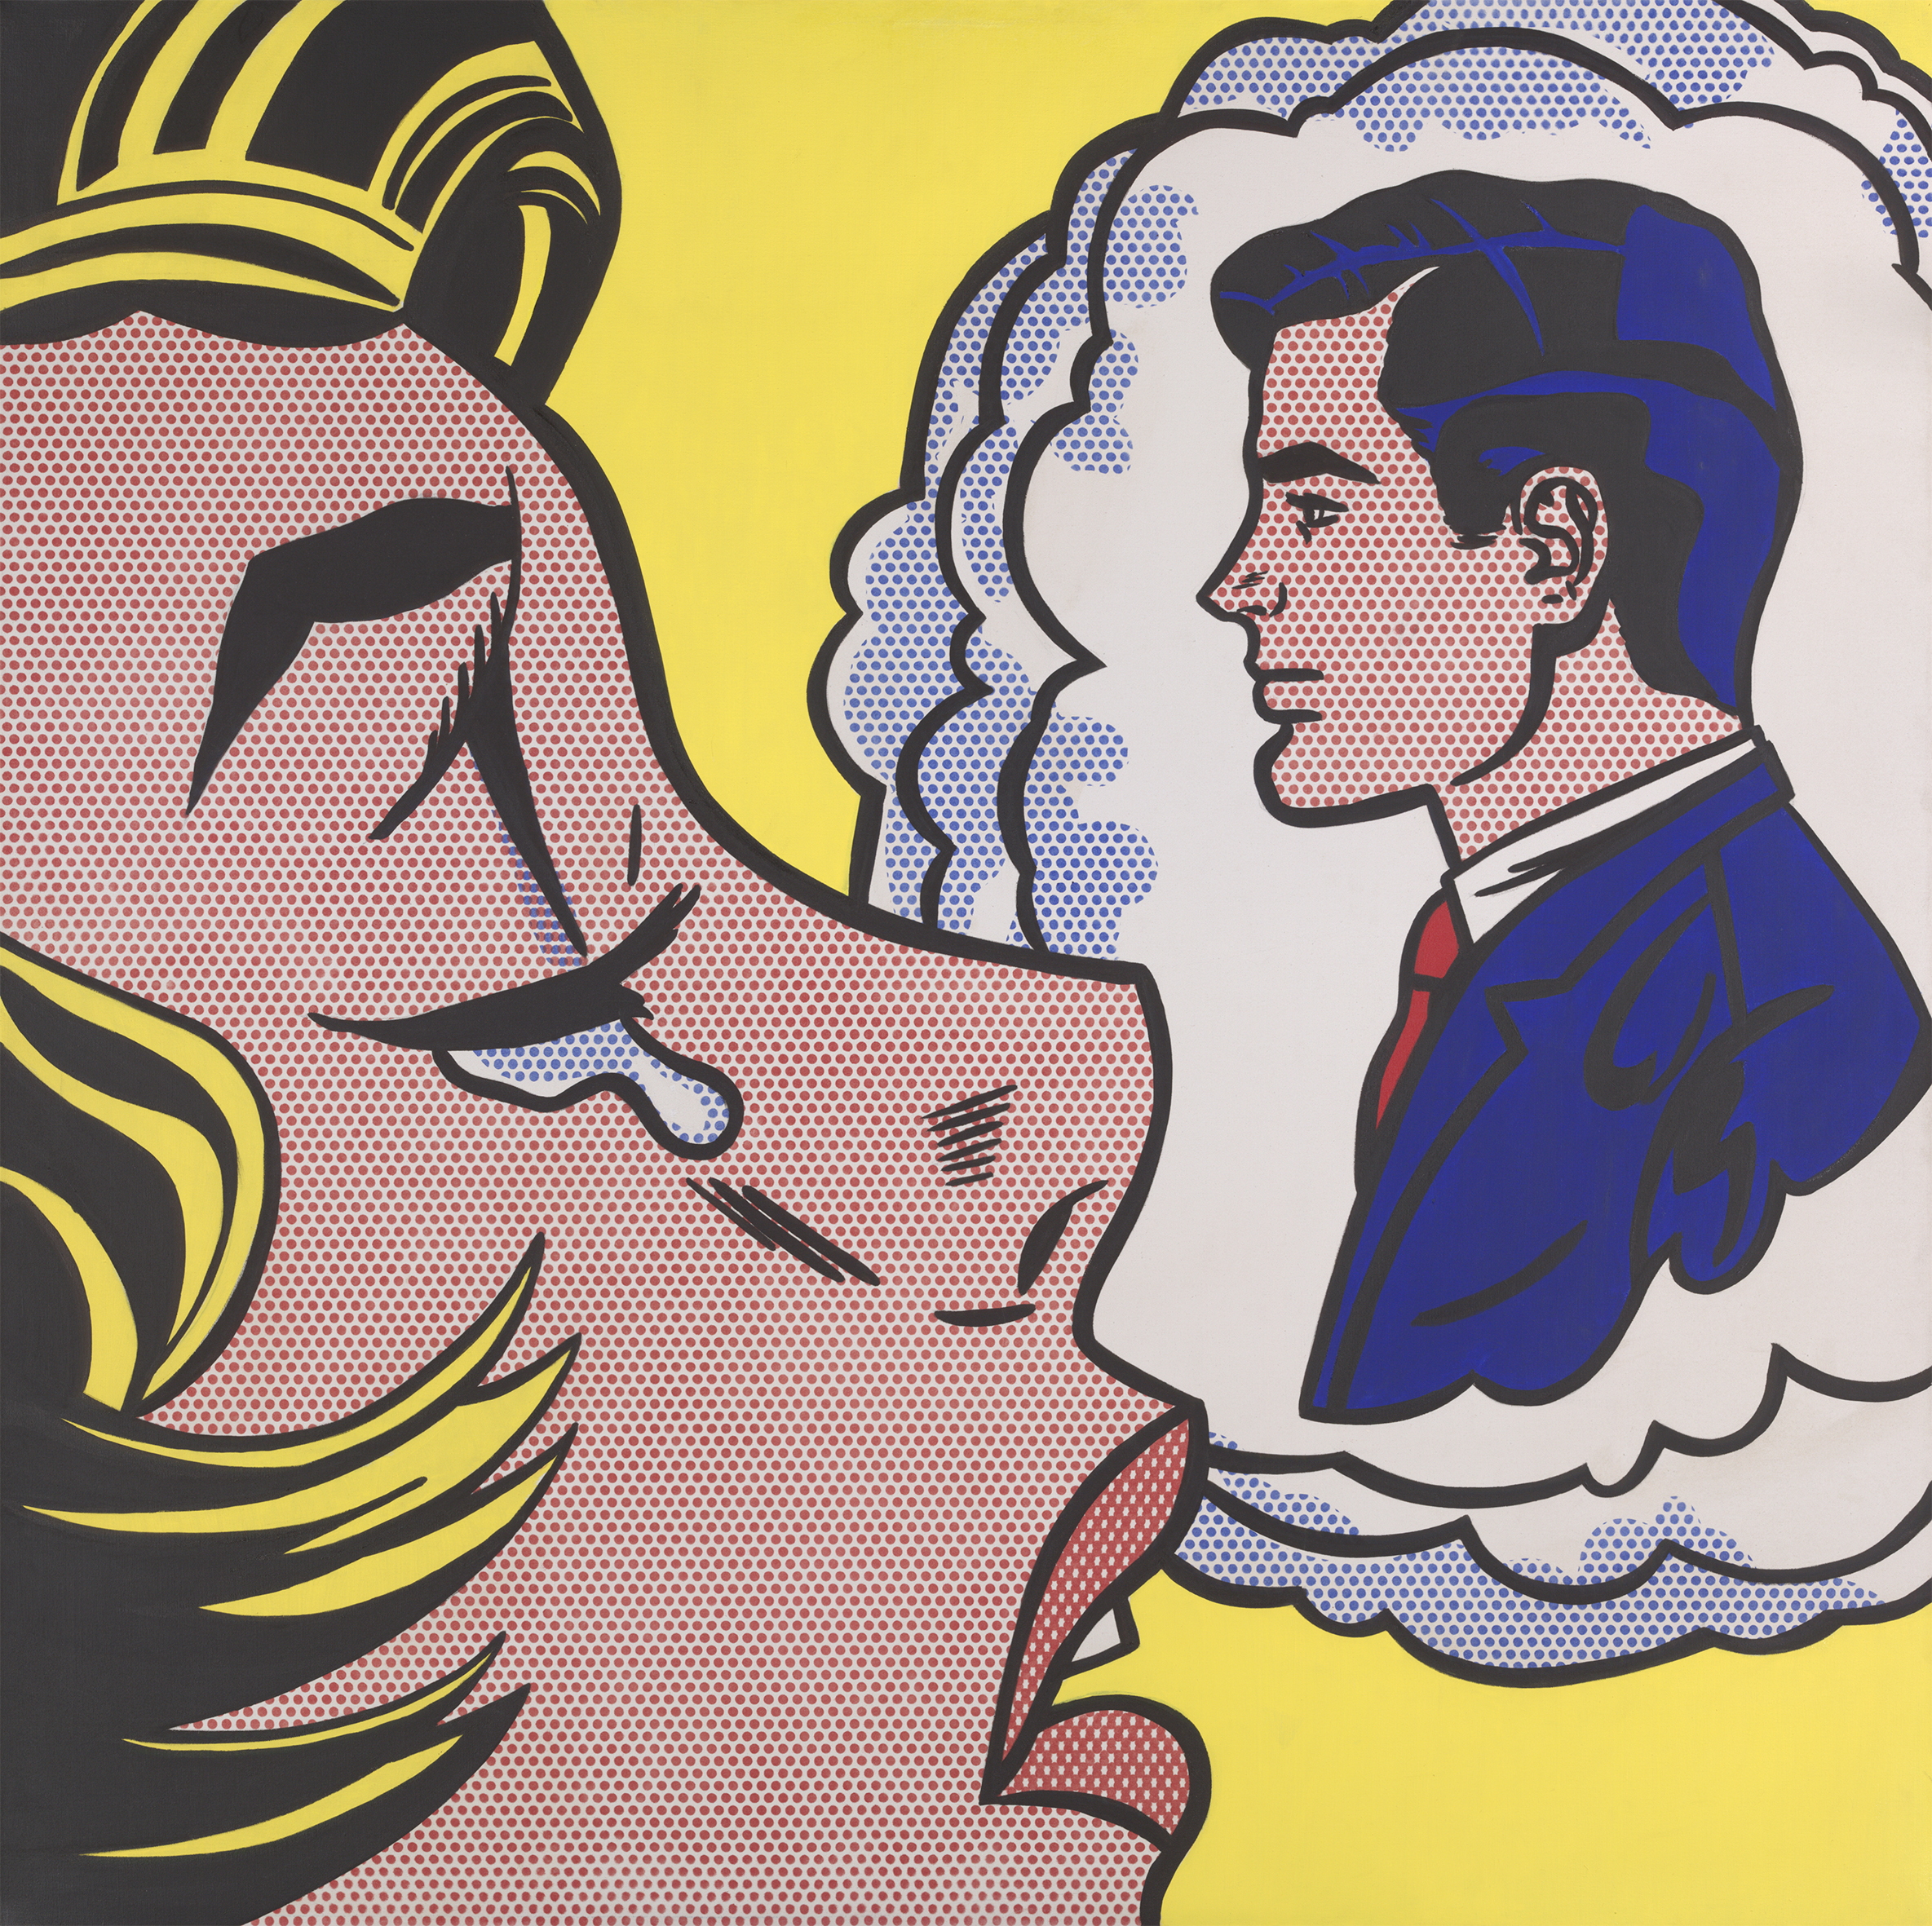 Roy Lichtenstein, Thinking of Him, 1963